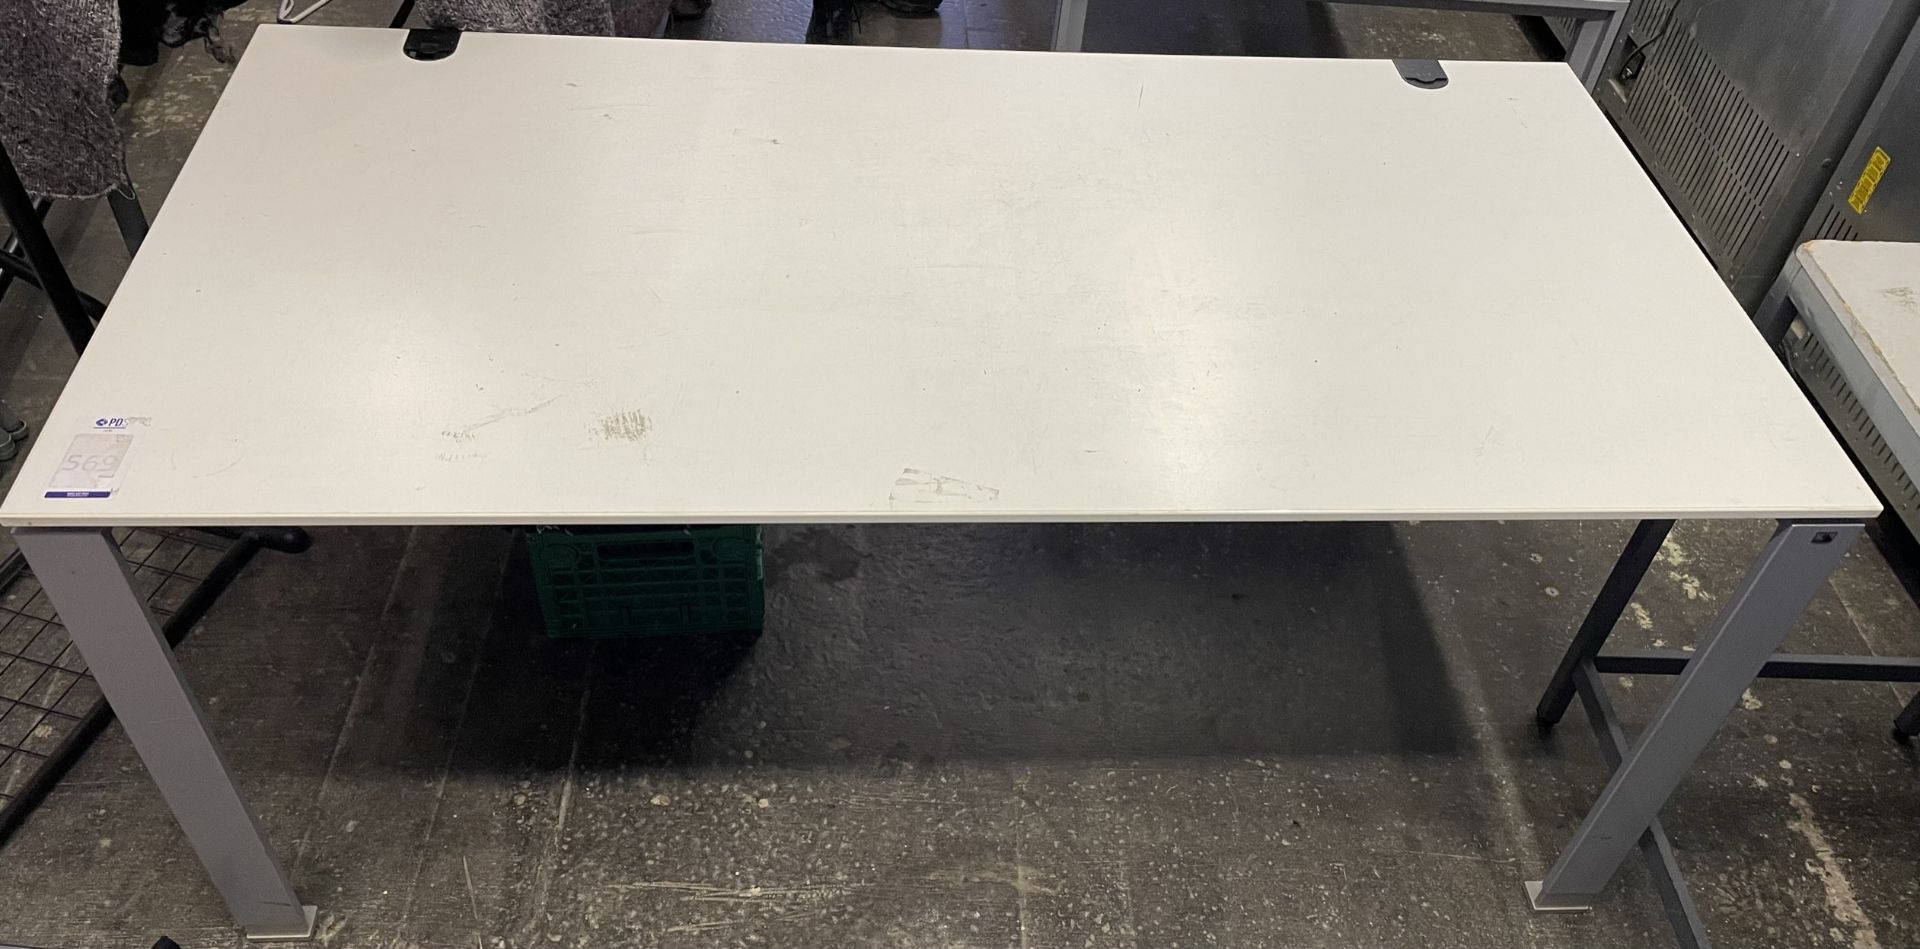 4 Metal Framed White Melamine Desks (Location Stockport. Please Refer to General Notes)